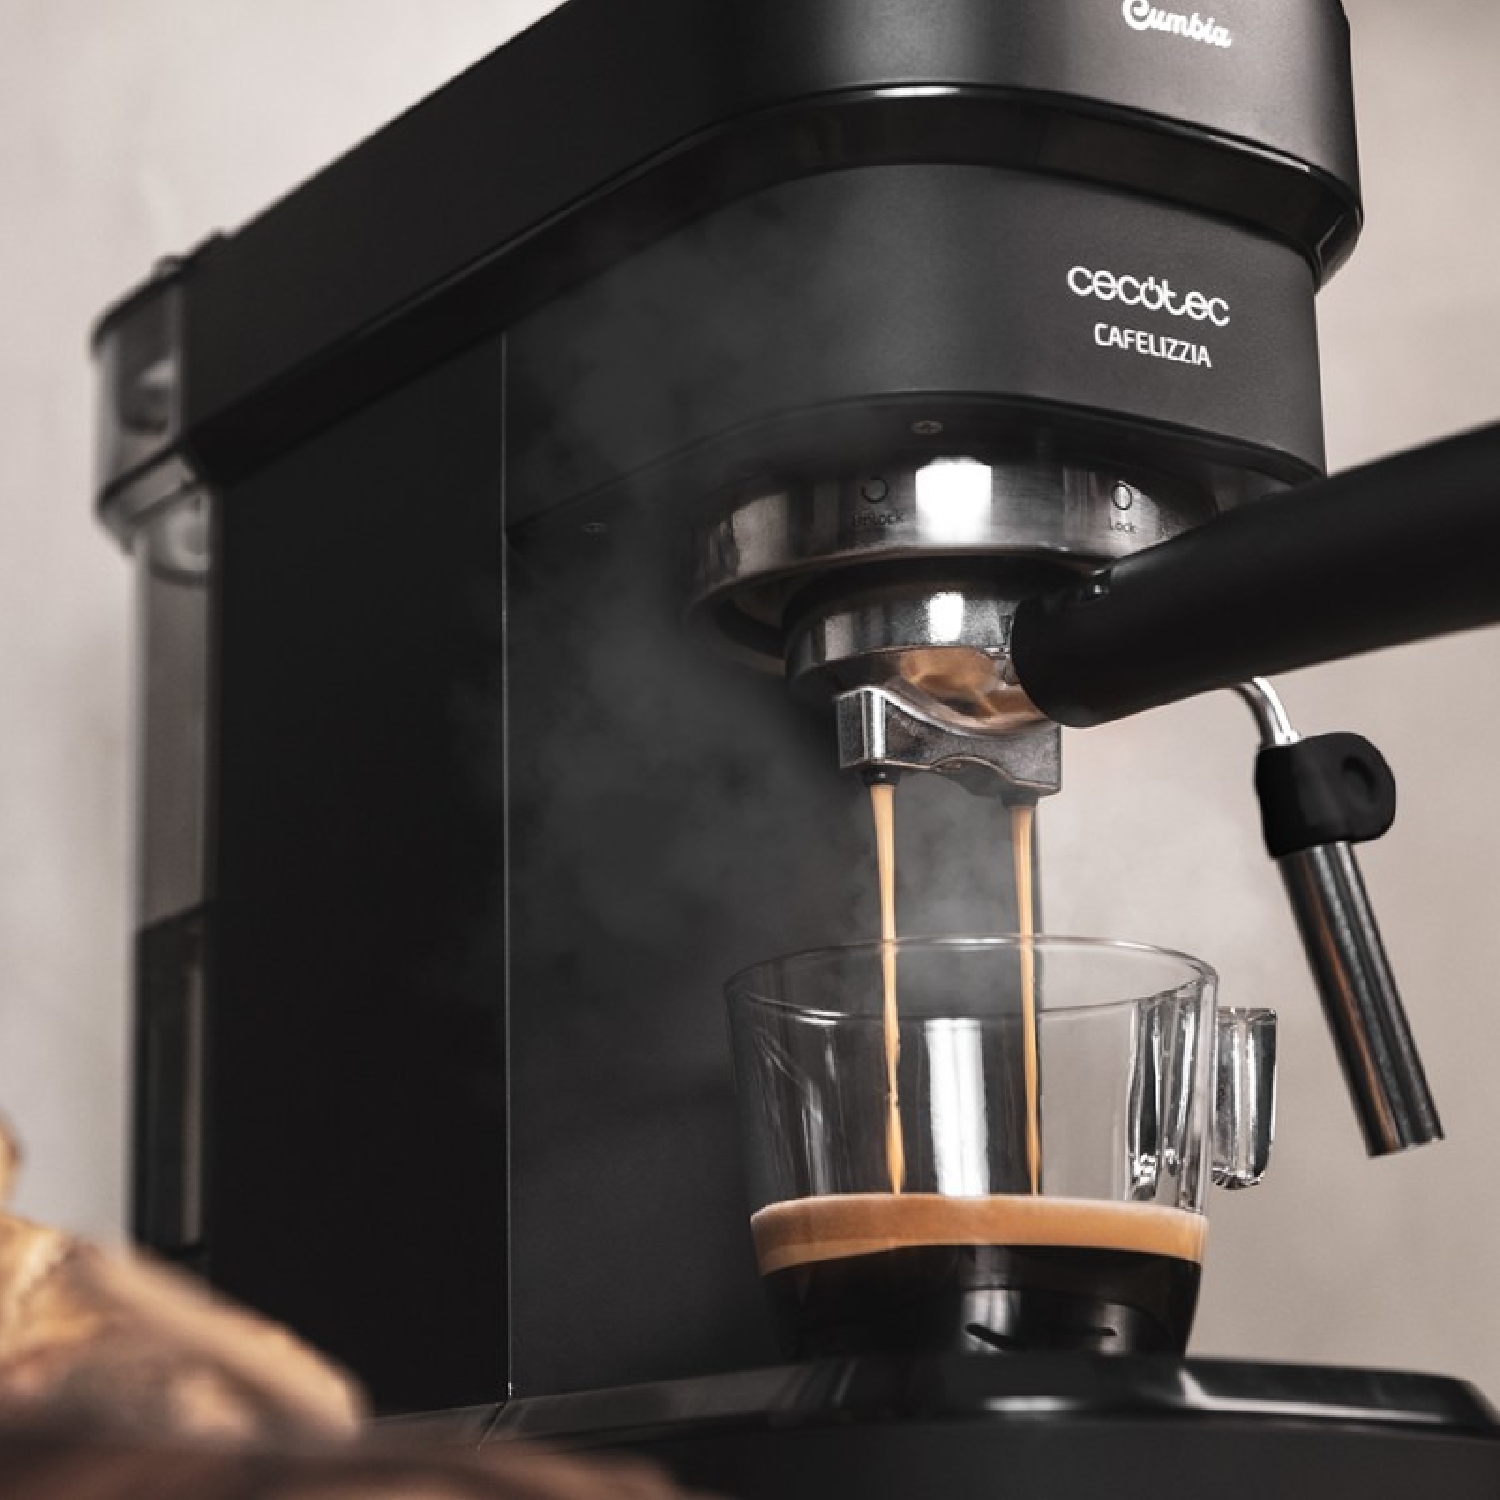 Cecotec Cafelizzia 790 Black Pro Cafetera Espresso con Manómetro